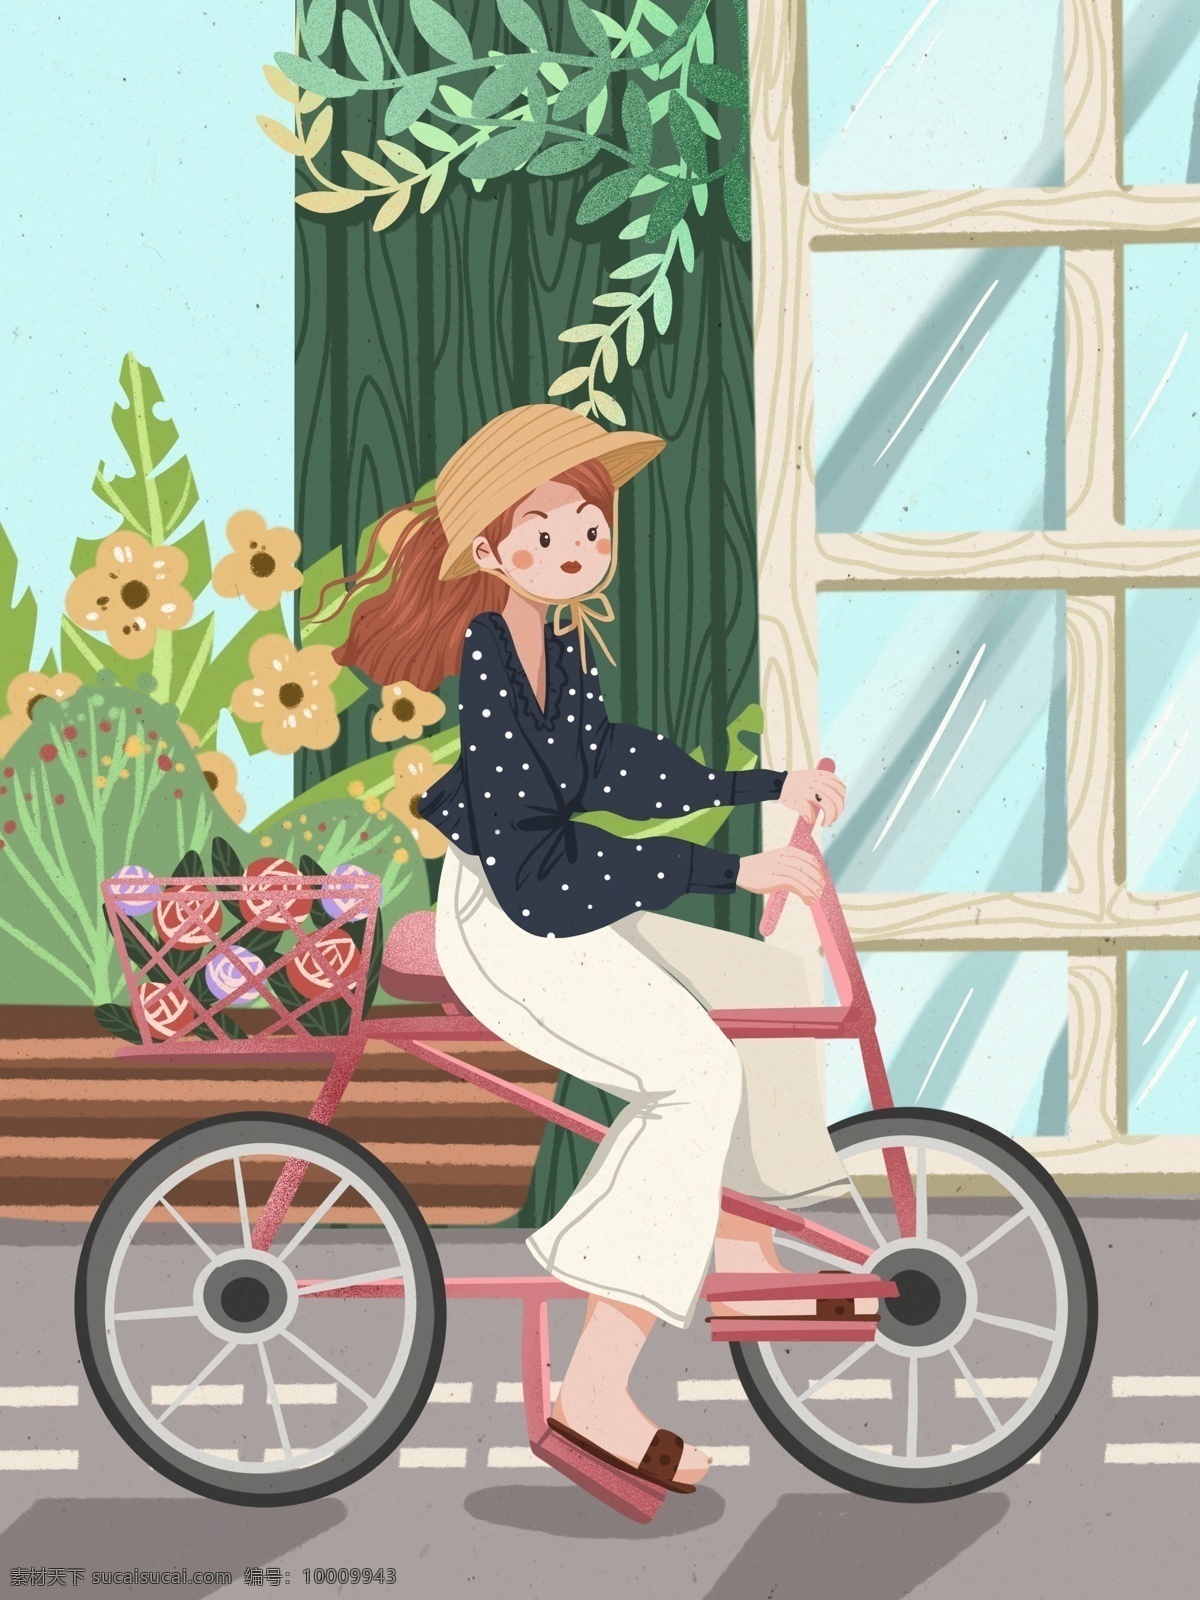 绿色 出行 女孩 骑车 小 清新 唯美 可爱 插画 小清新 浪漫 花卉 绿色出行 少女 自行车